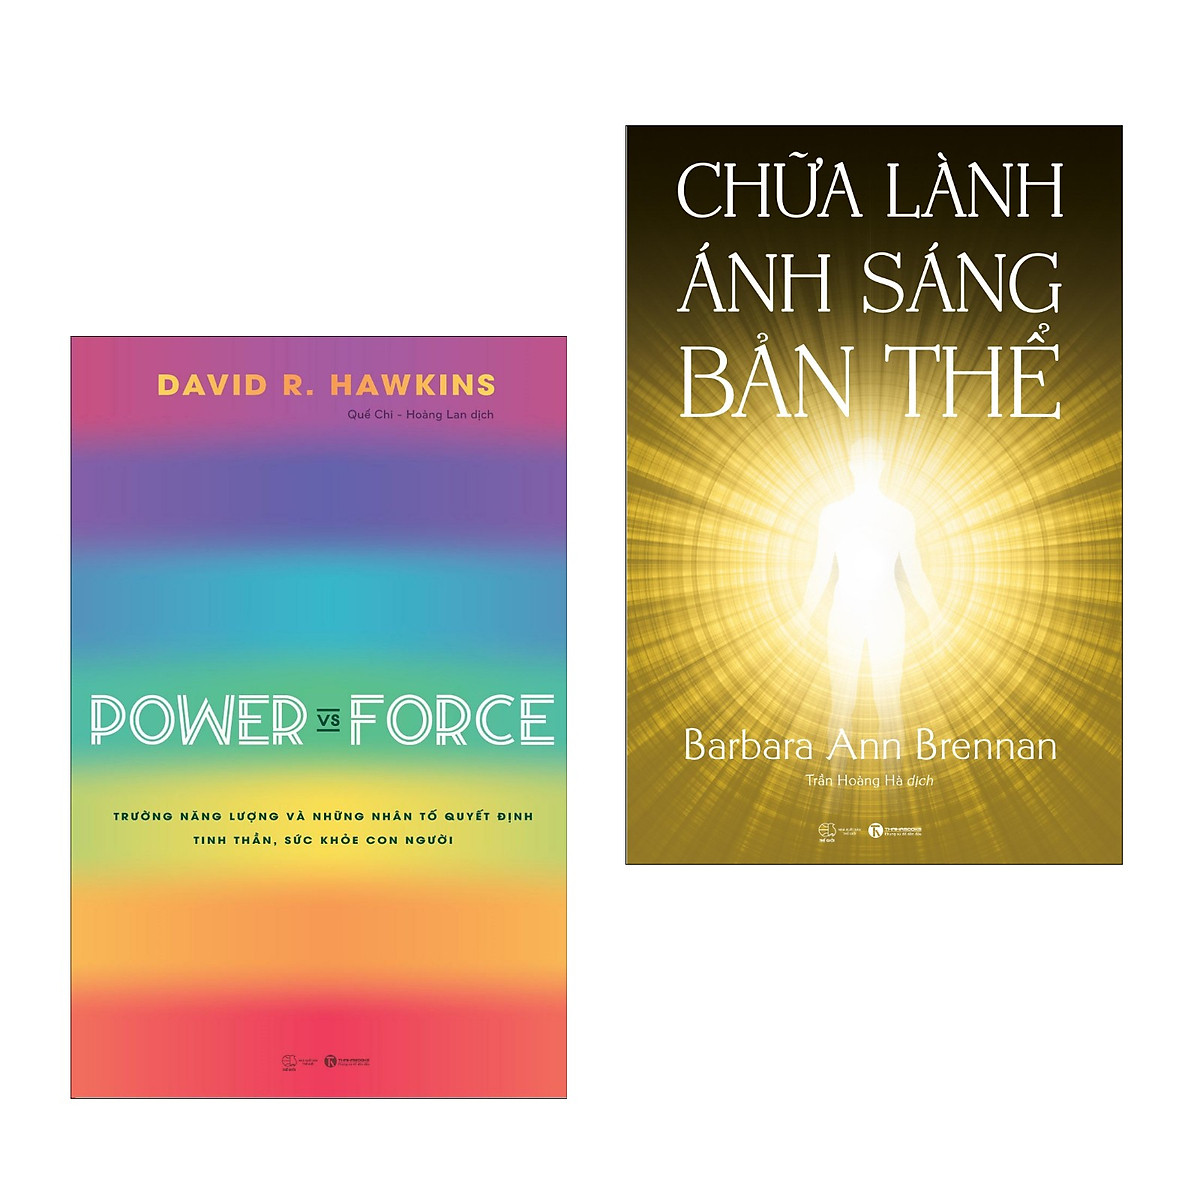 Combo 2 cuốn: Chữa Lành Ánh Sáng Bản Thể + Power Vs Force - Trường Năng Lượng Và Những Nhân Tố Quyết Định Tinh Thần Và Sức Khỏe Con Người